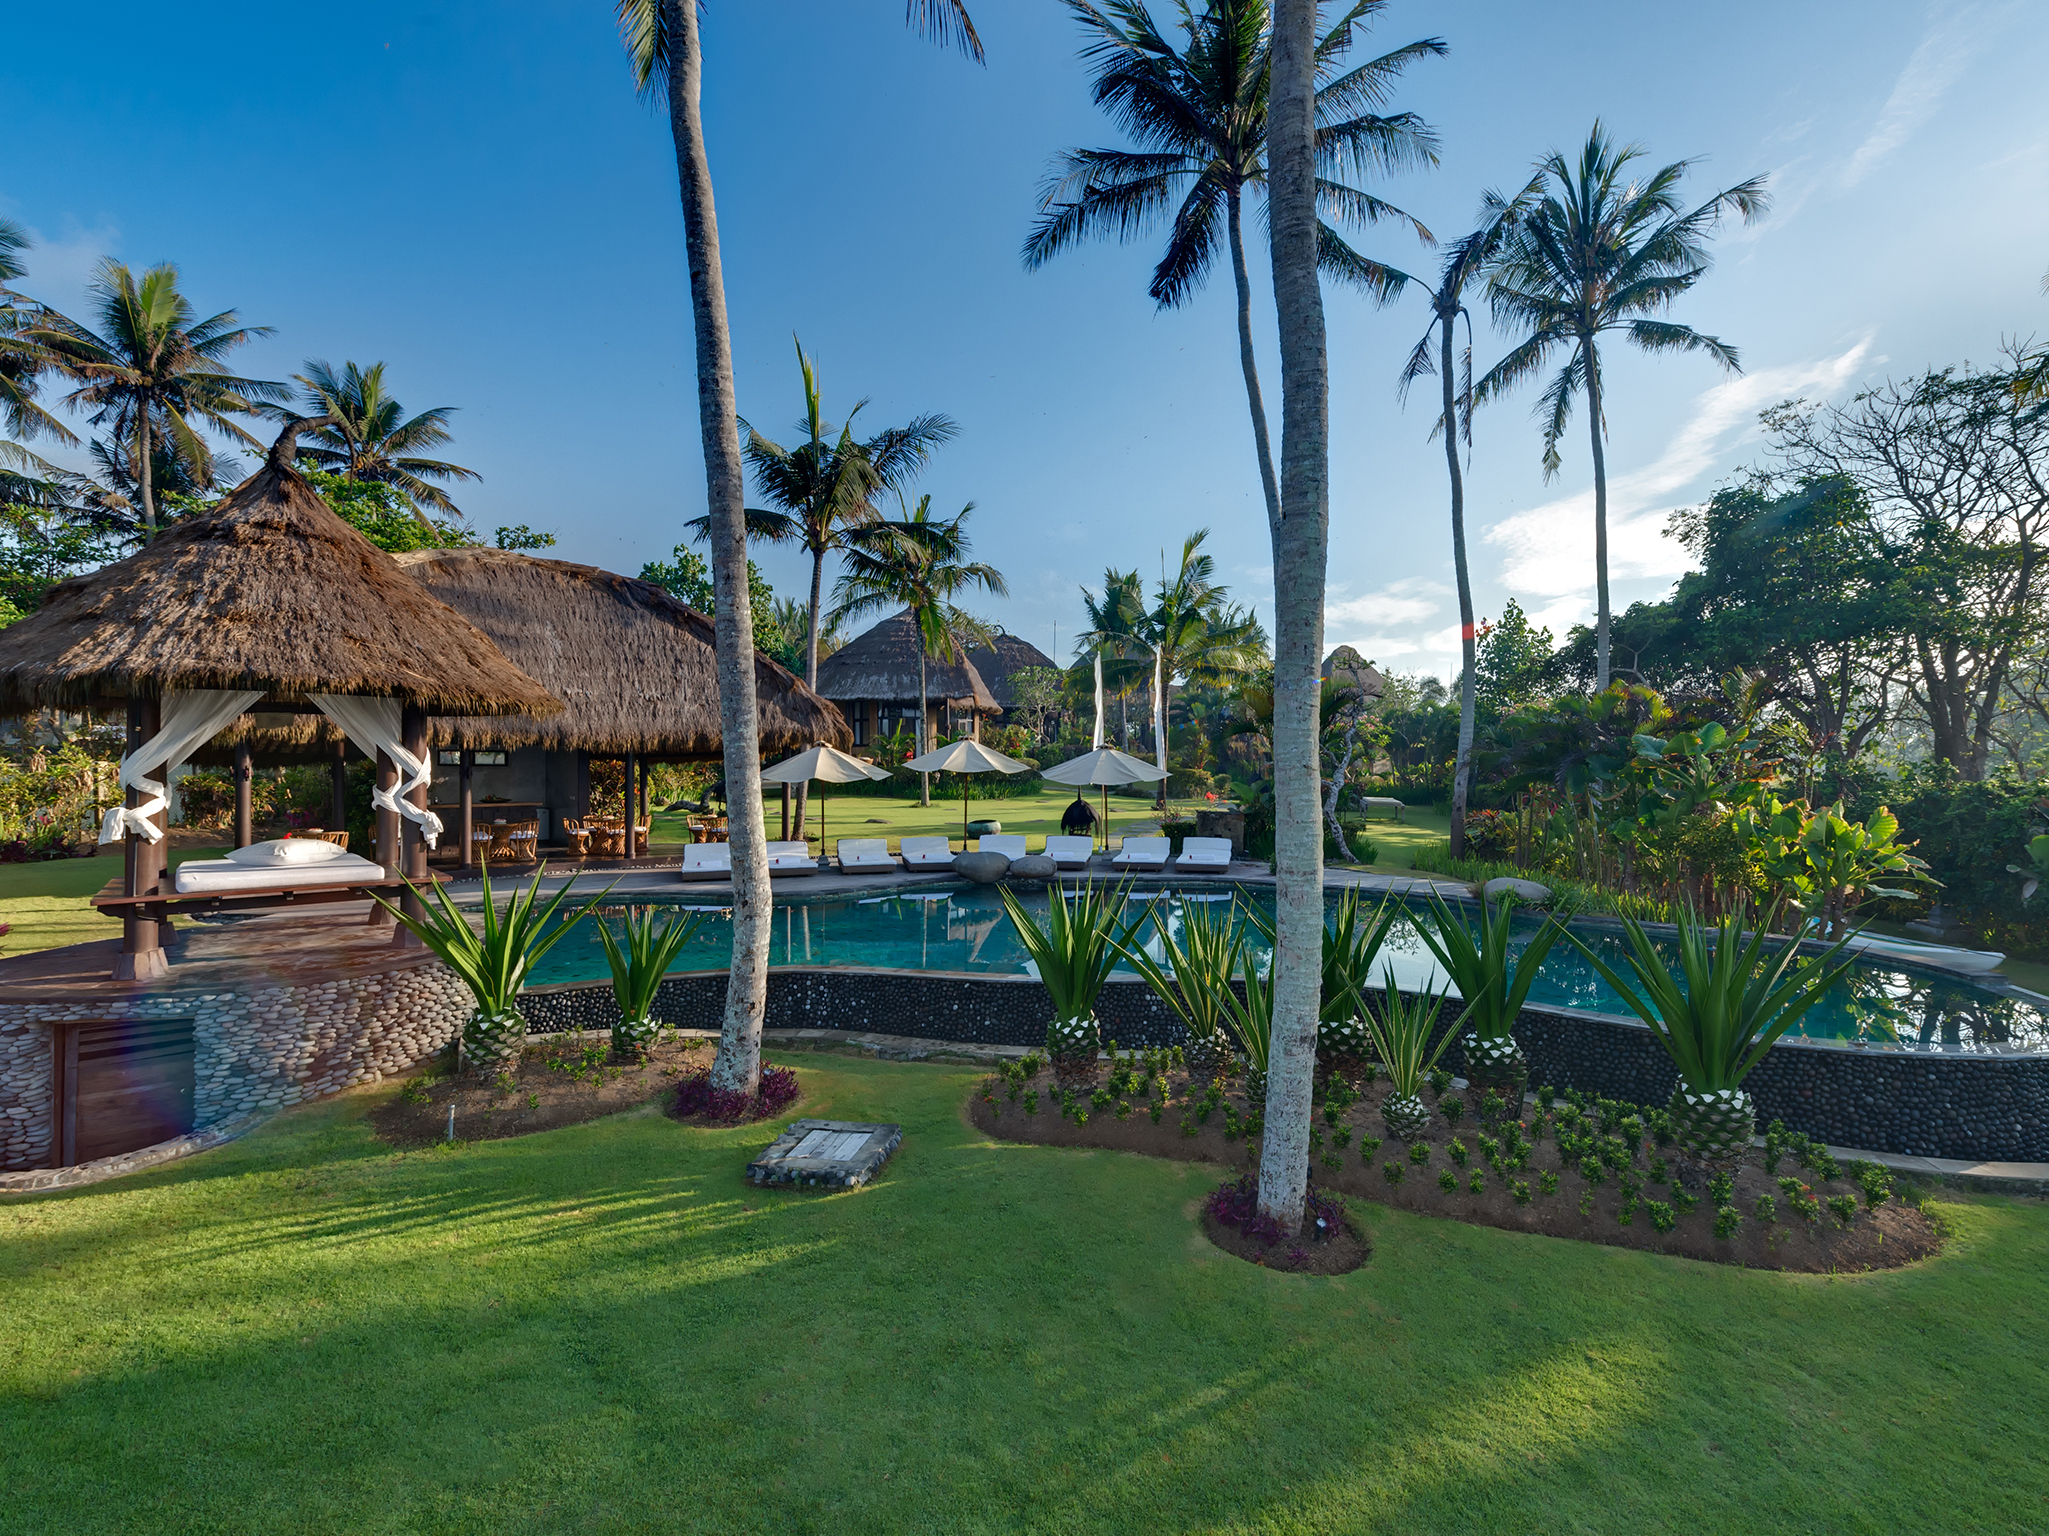 Taman Ahimsa - Swimming pool and villa in the background - Taman Ahimsa, Seseh-Tanah Lot, Bali